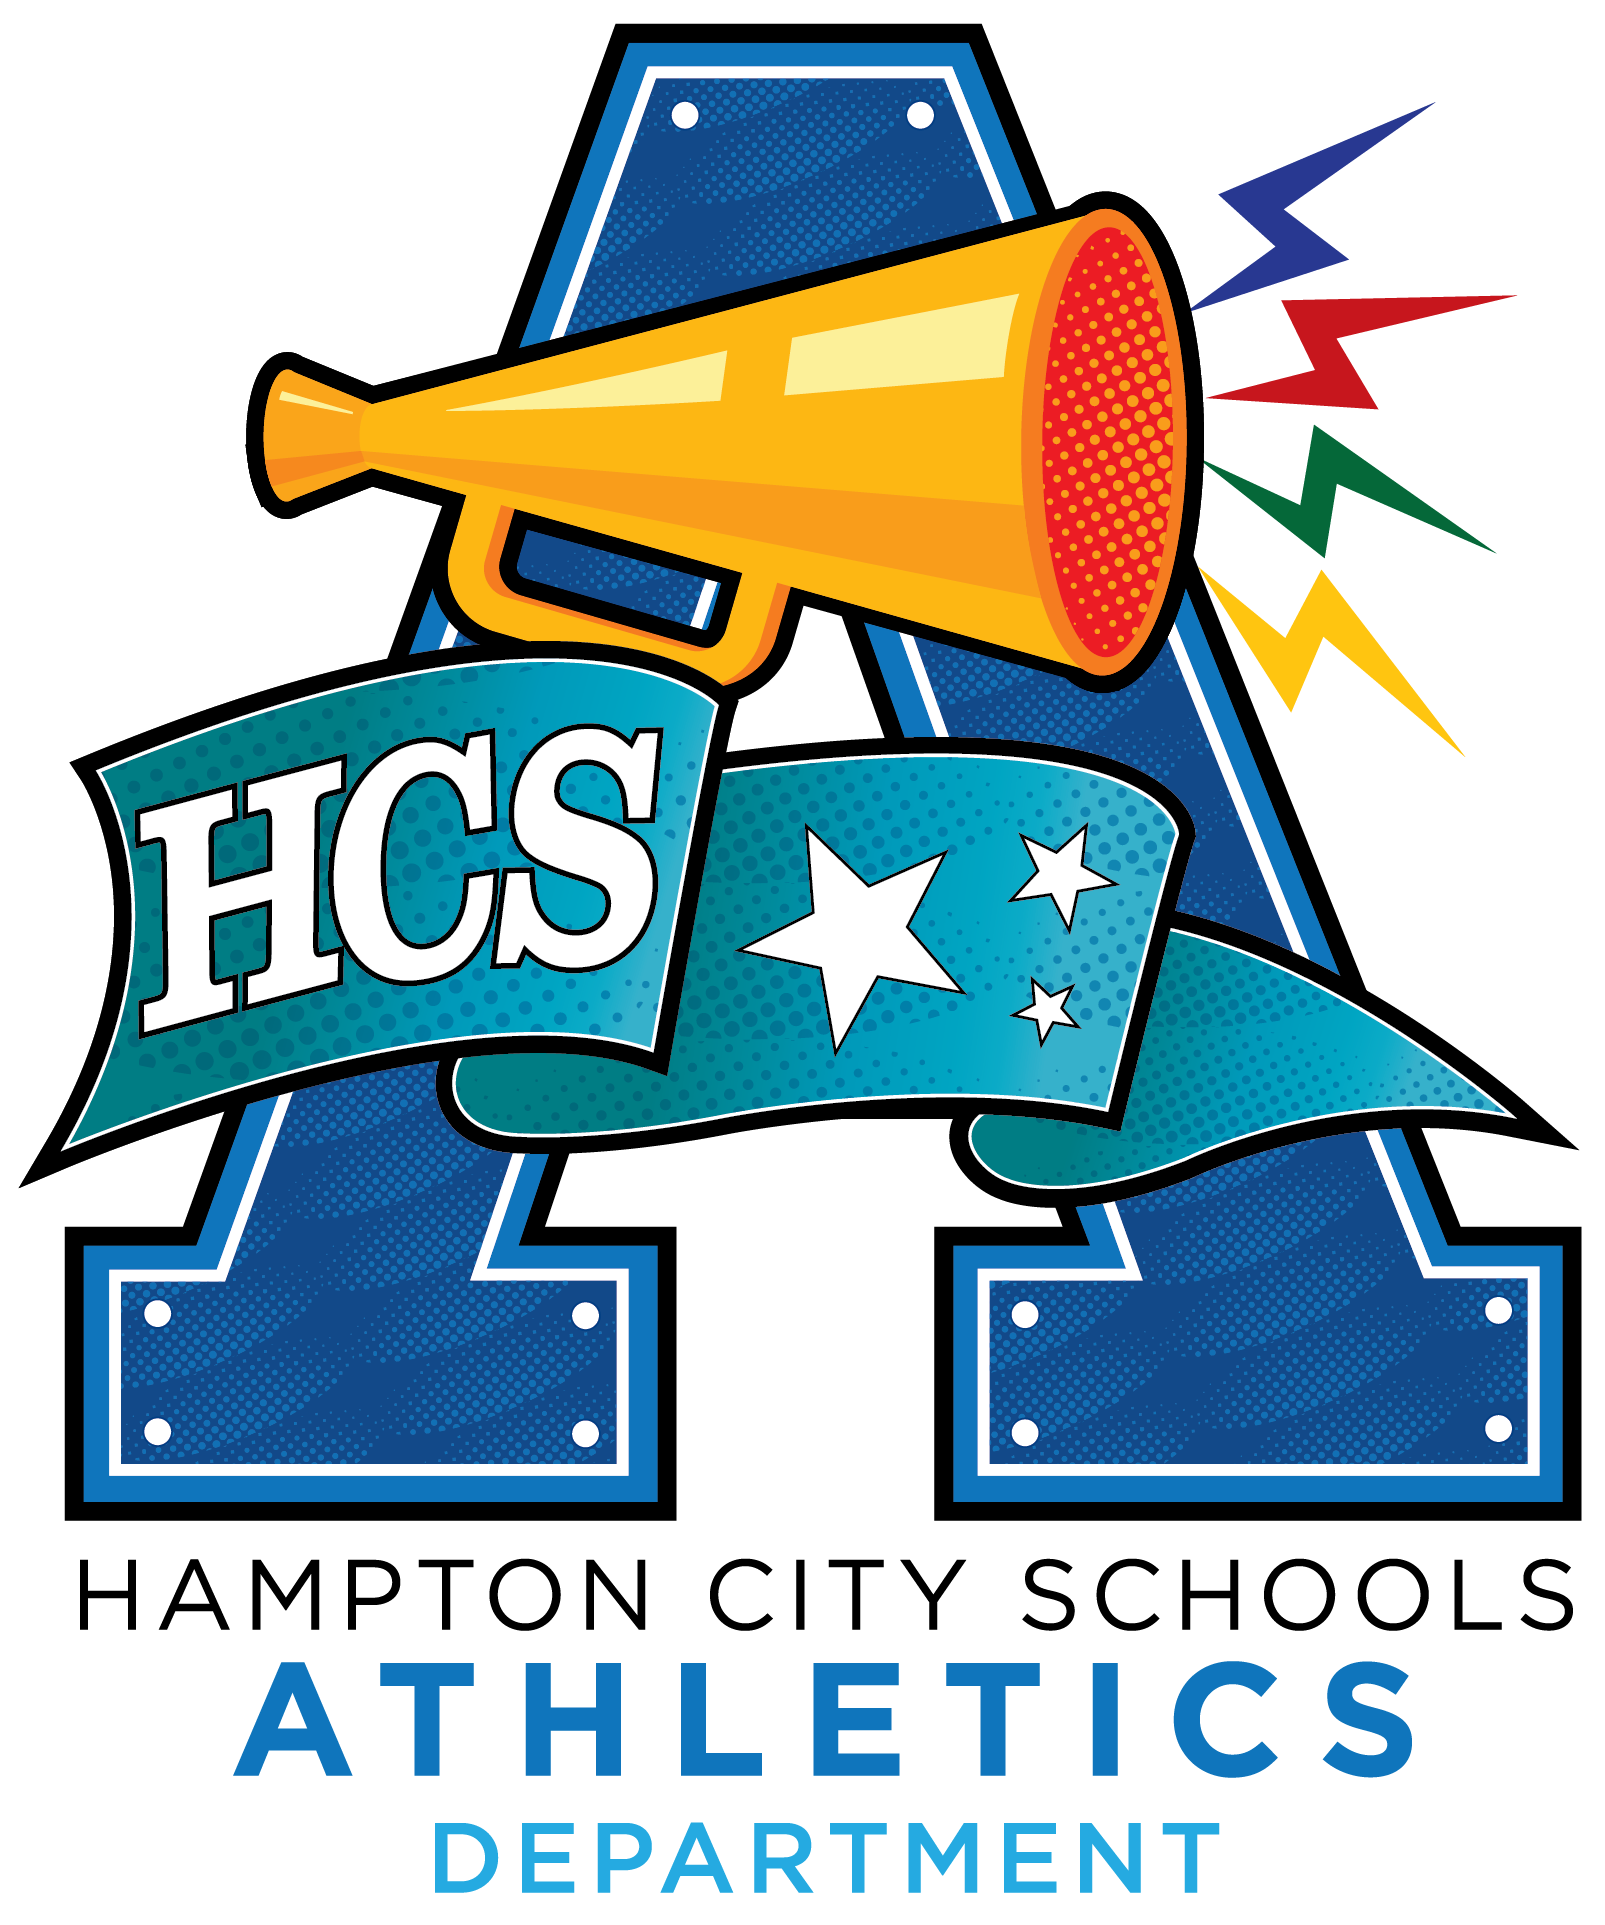 HCS Athletics Department